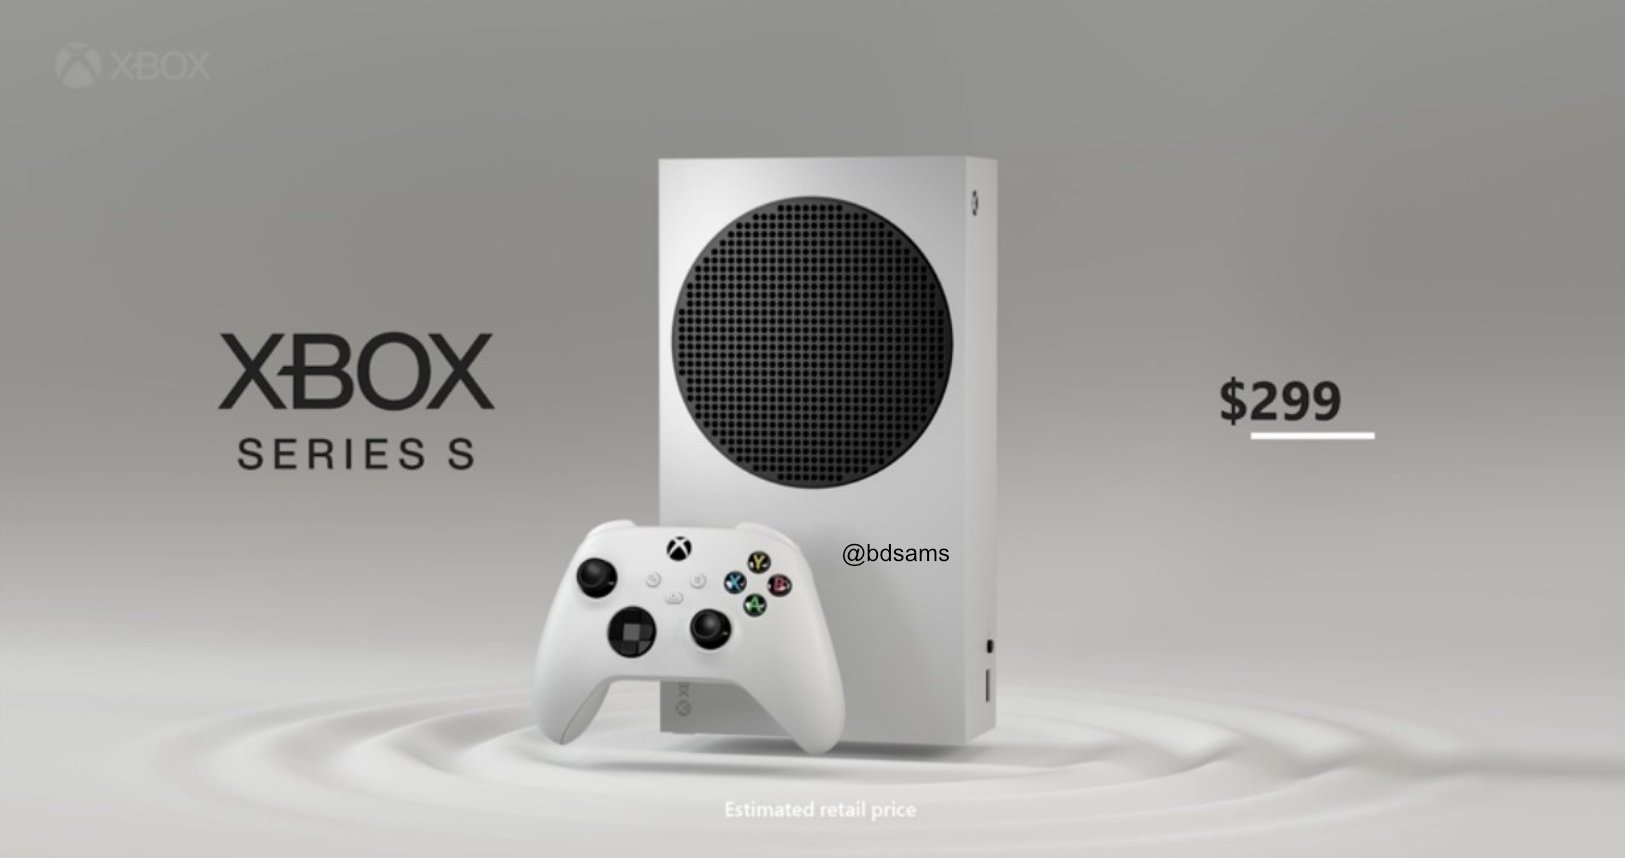 On sait tout de la Xbox Series S, de son design à son prix (en dollars)